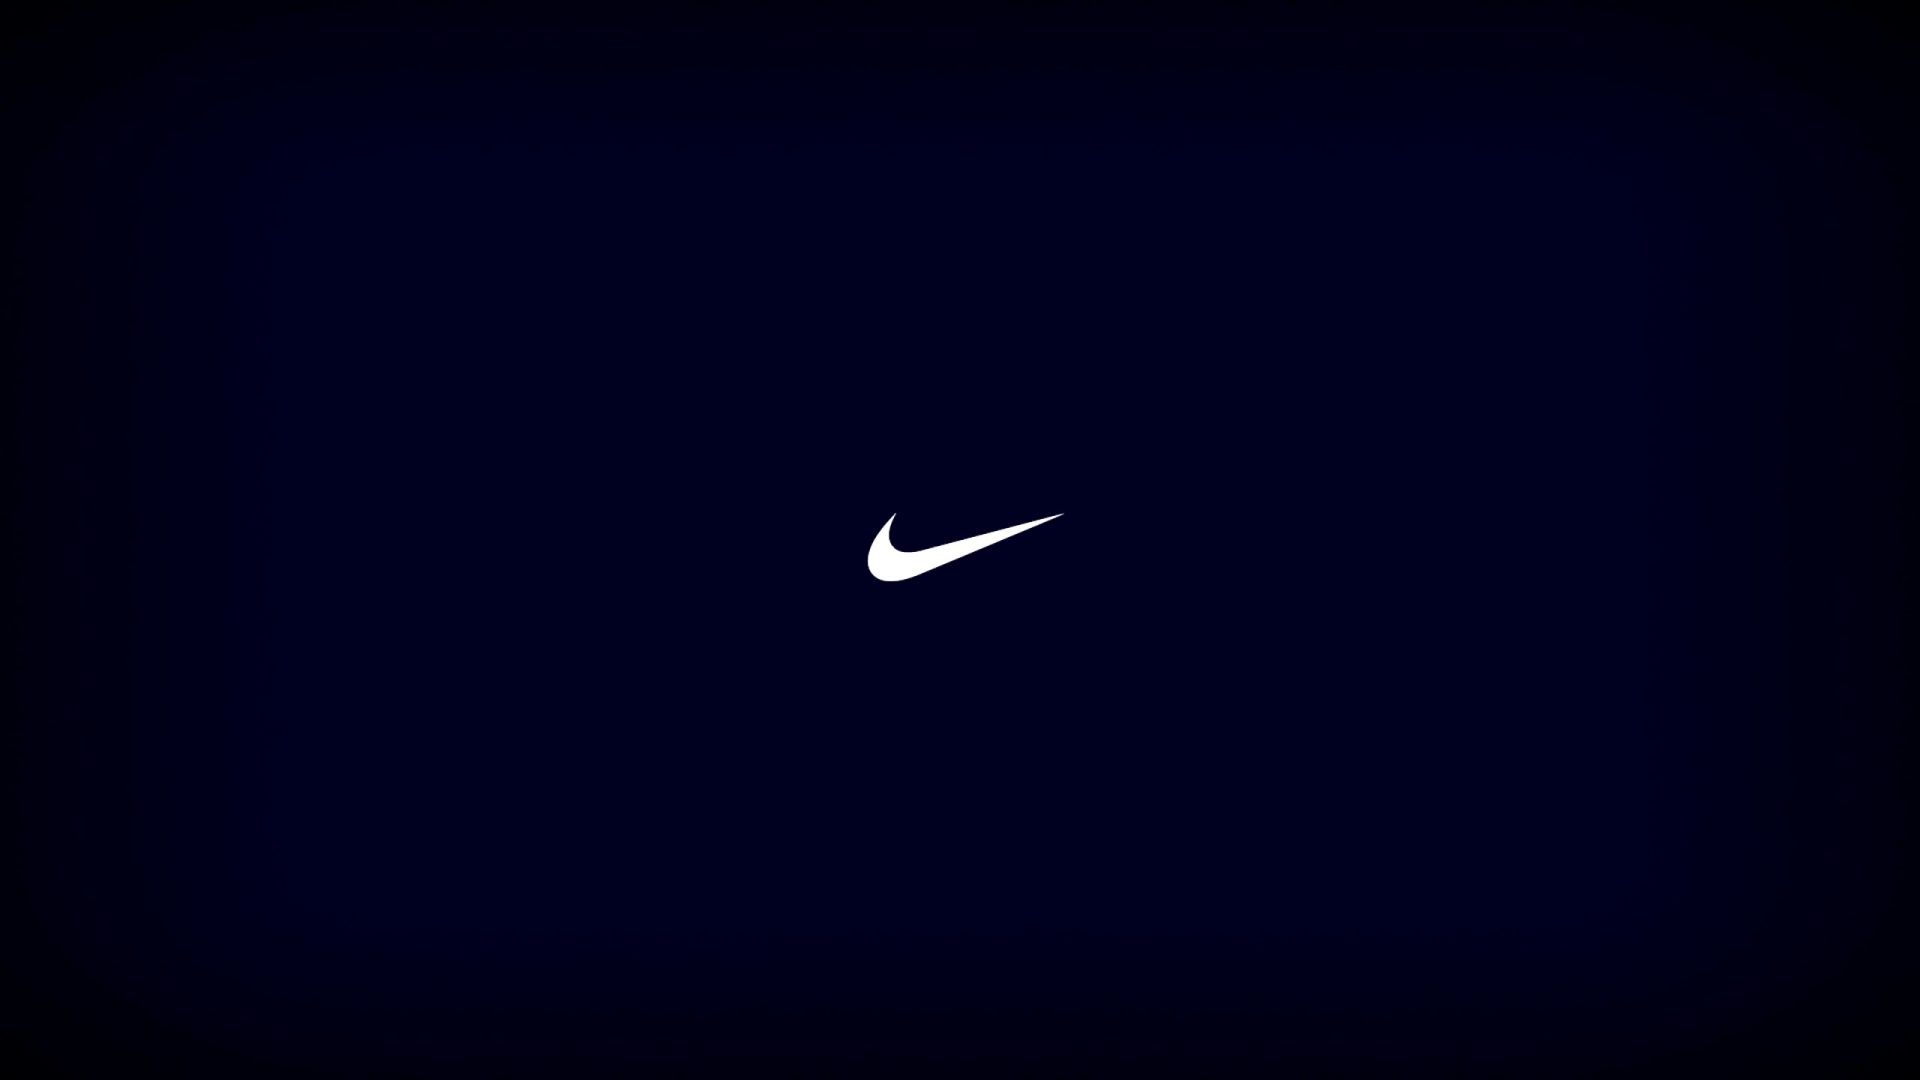 Nike logo wallpaper HD